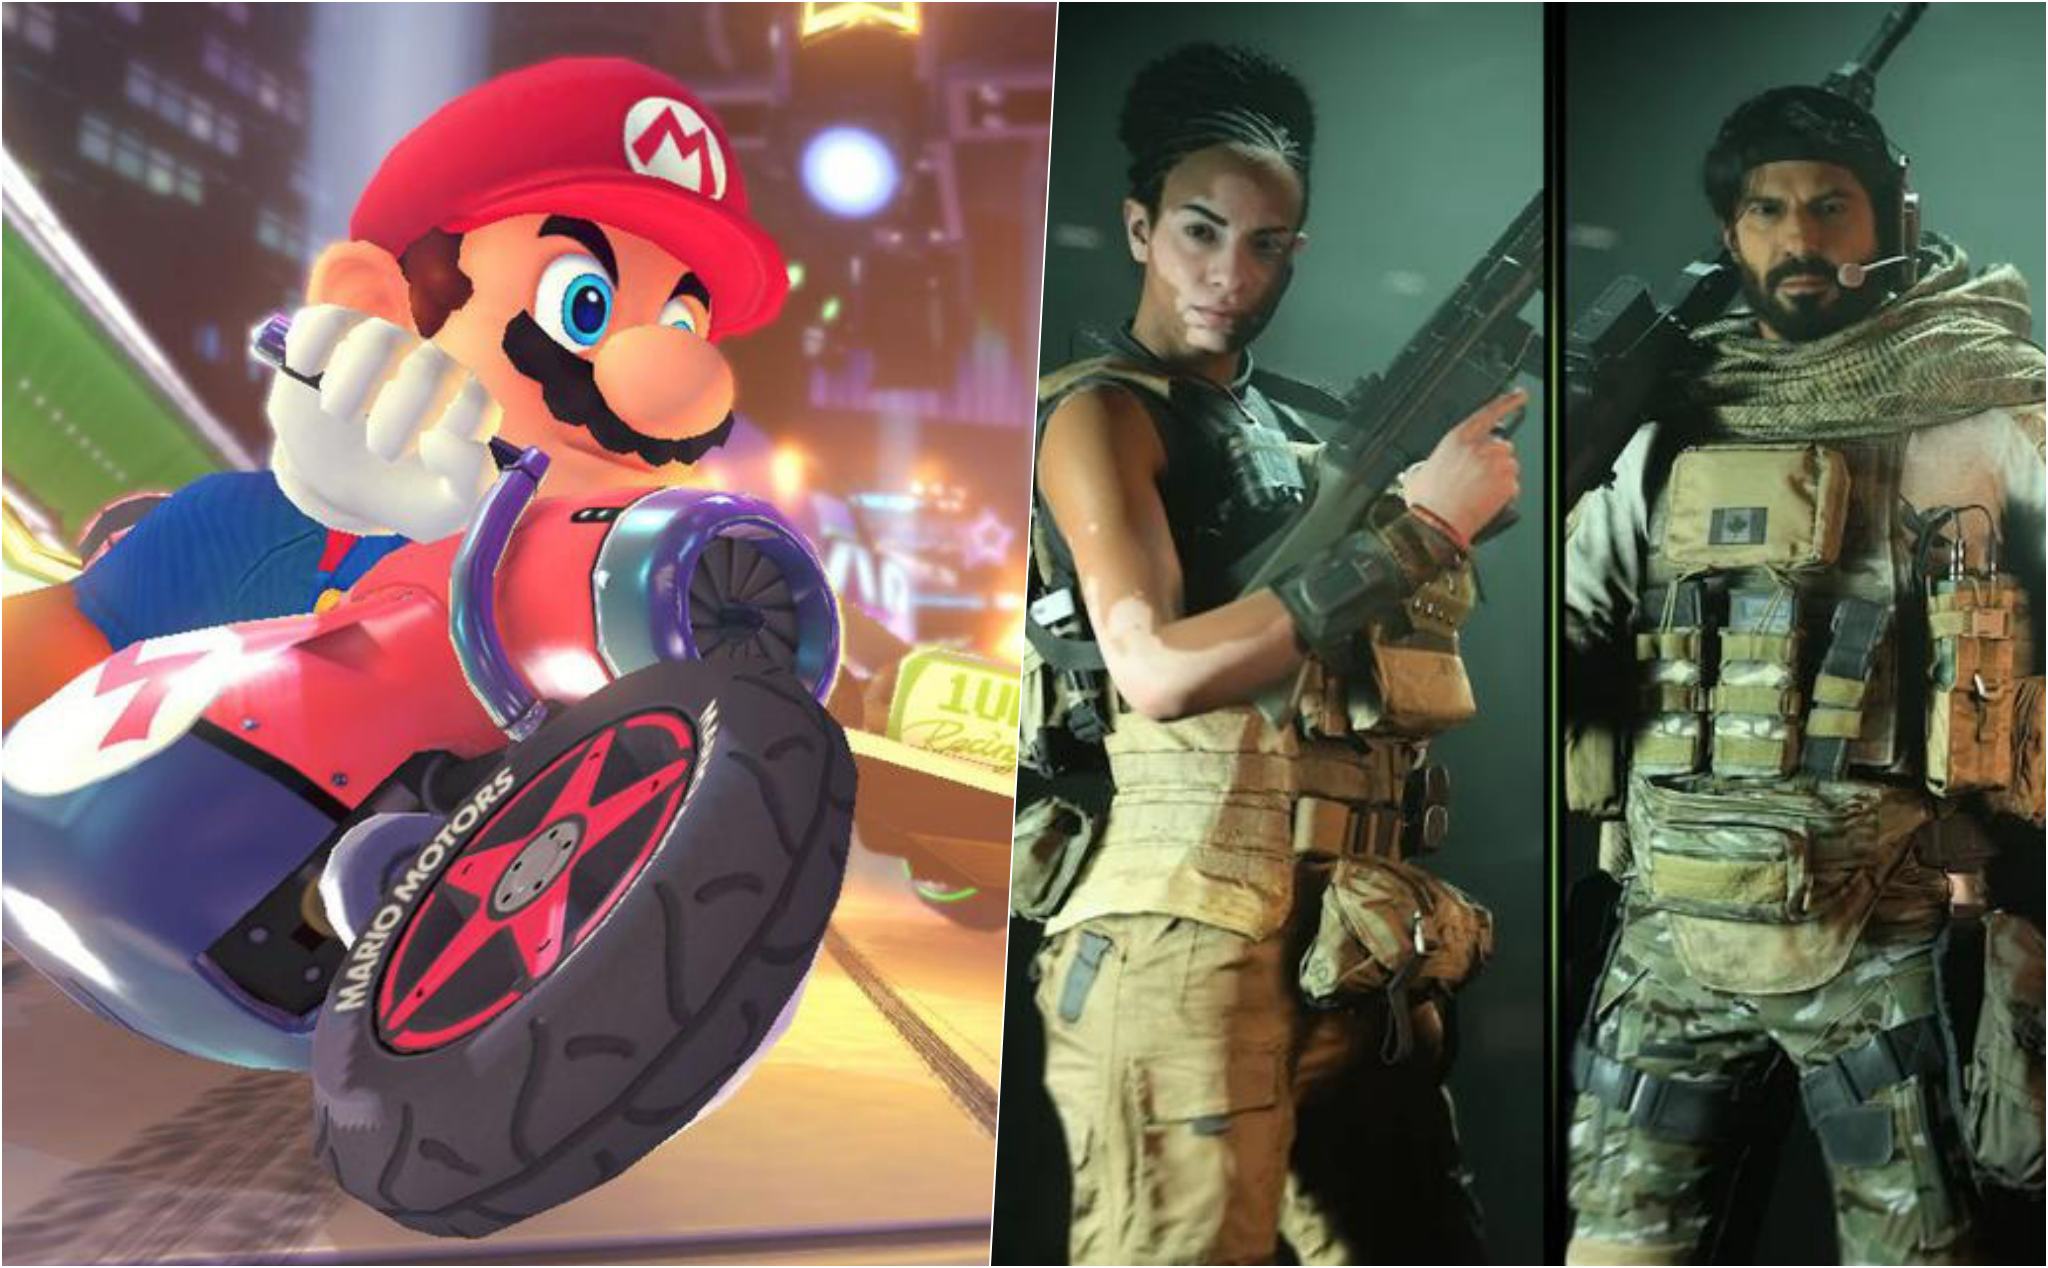 Top 5 trò chơi gây stress cho người chơi nhất, Mario Kart đứng đầu bảng